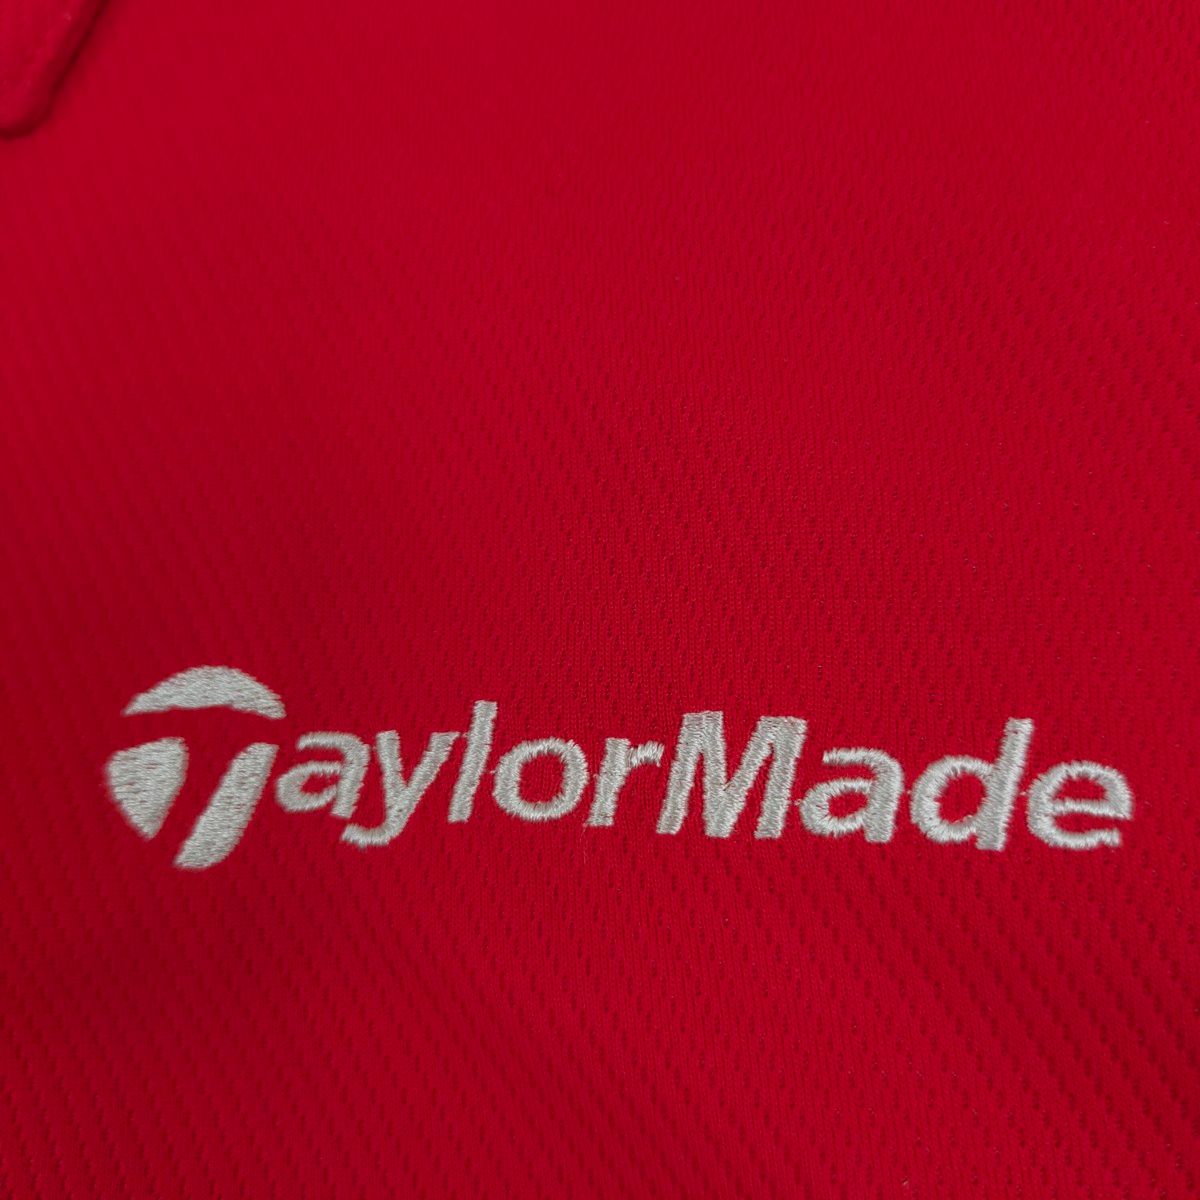 テーラーメイド ゴルフウェア ゴルフシャツ ポロシャツ メンズ Lサイズ 赤 吸汗速乾ドライ ストレッチ